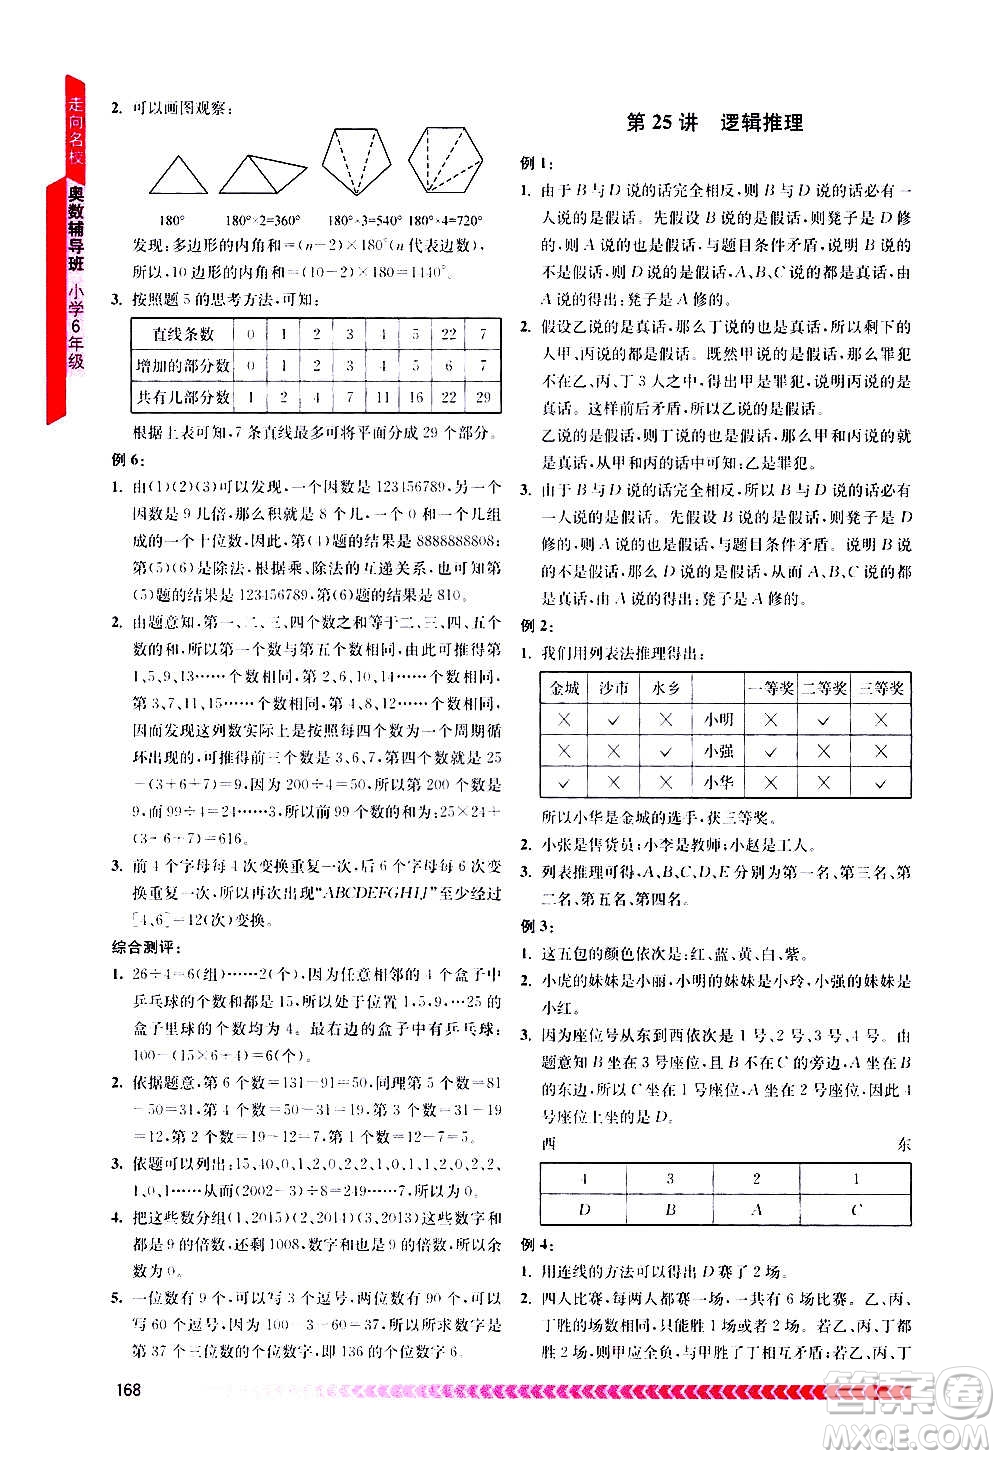 南京出版社2020年奥数辅导班小学六年级答案